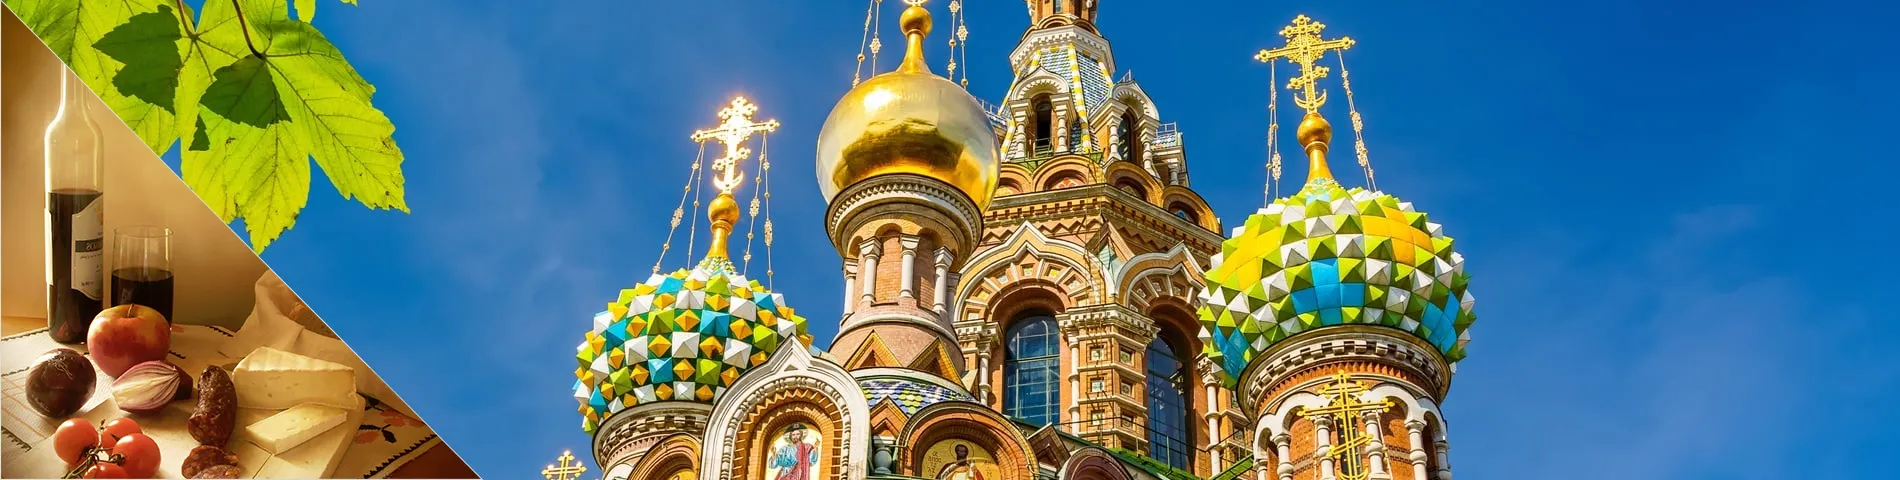 San Pietroburgo - Russo & Cultura